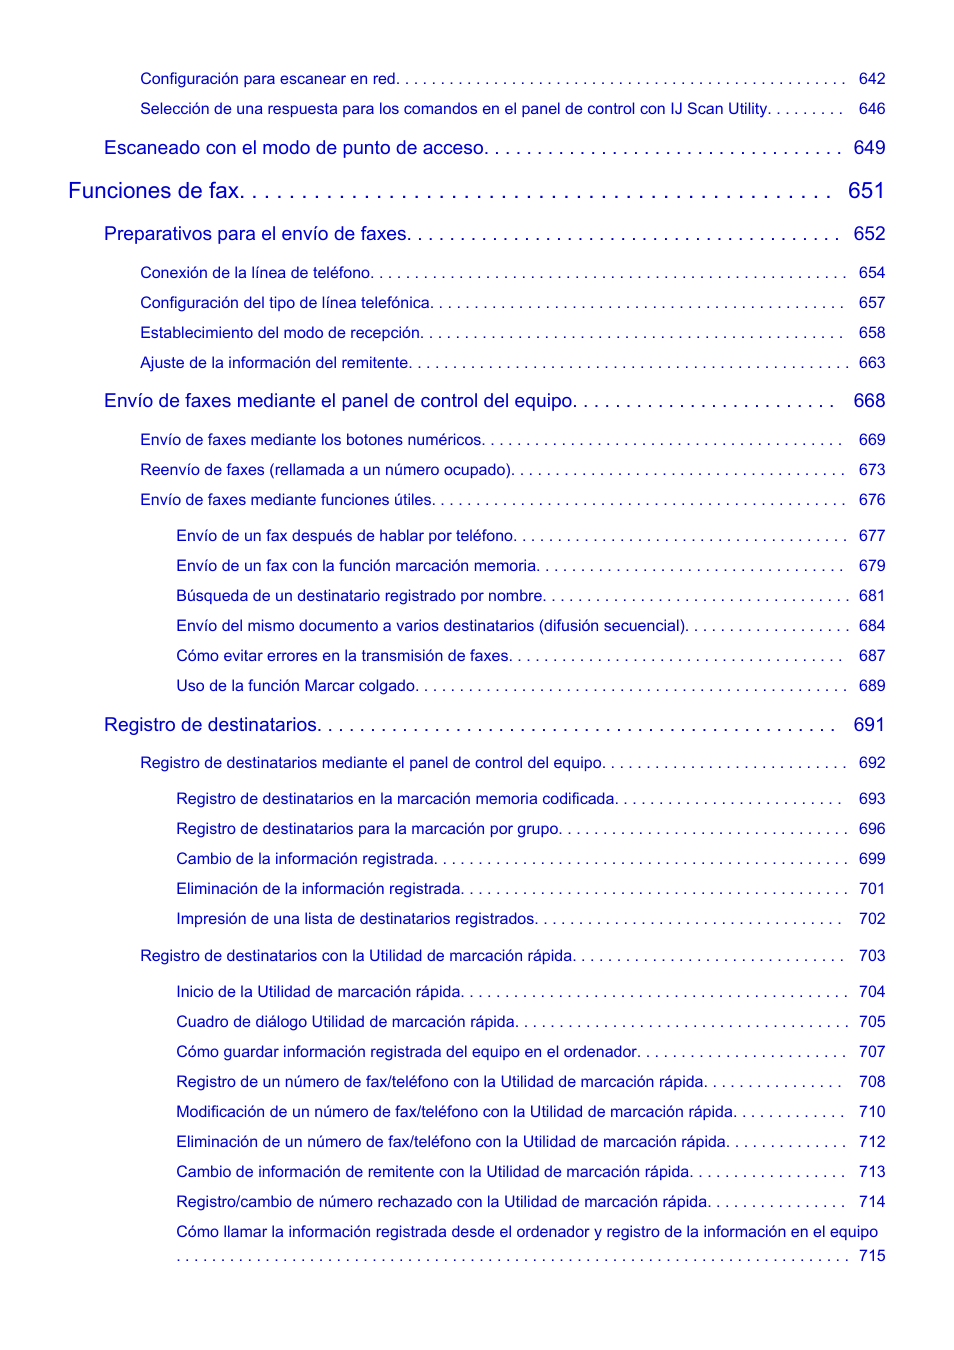 Funciones de fax | Canon PIXMA MX475 Manual del usuario | Página 10 / 973